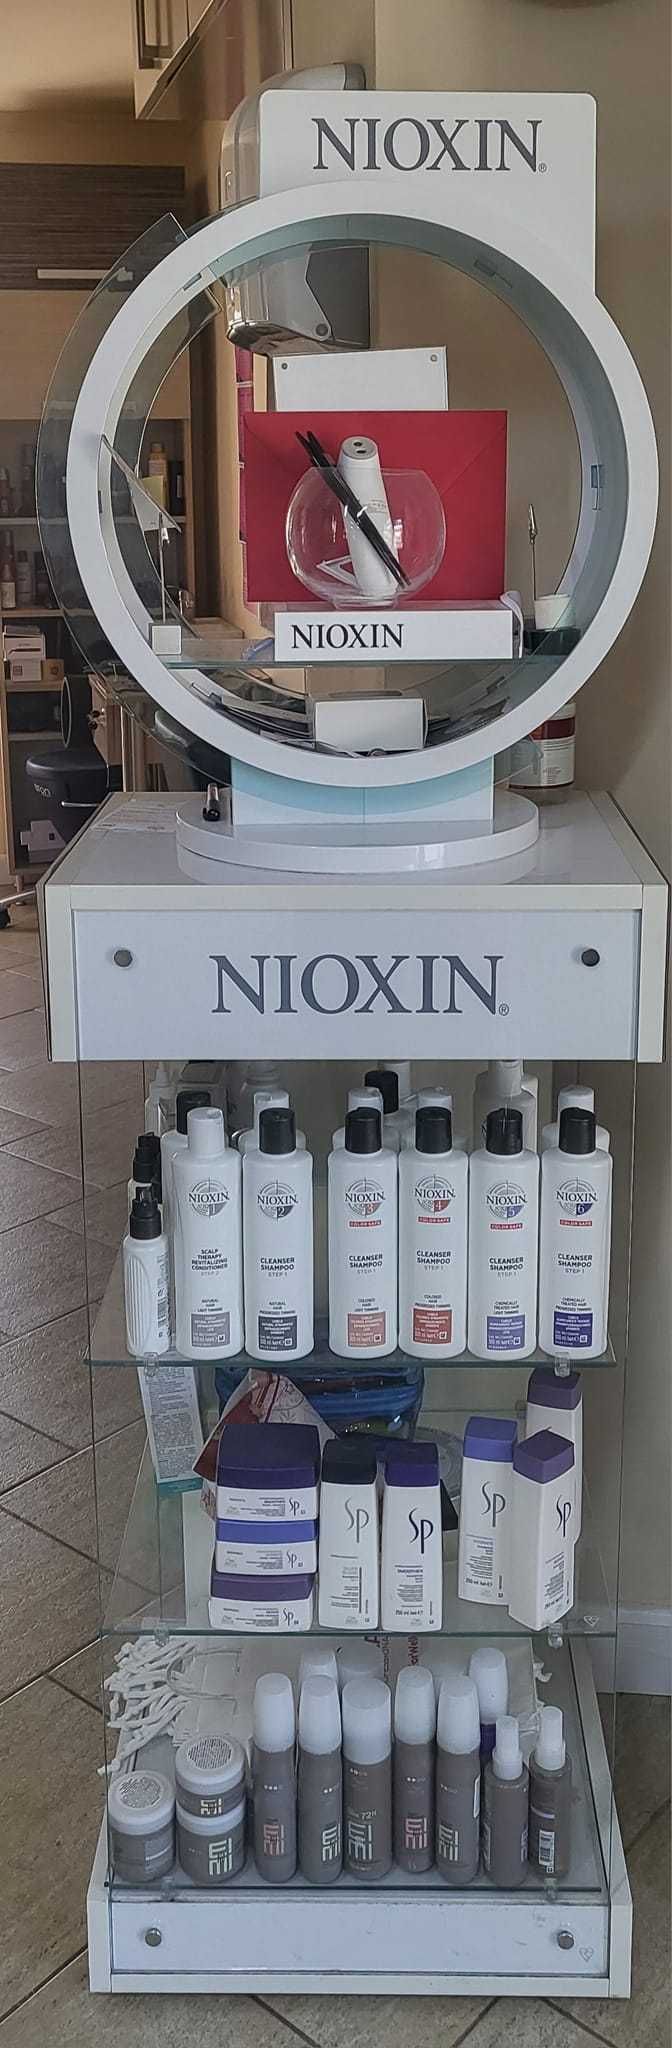 Vitrina produse profesionale cu emblema Nioxin